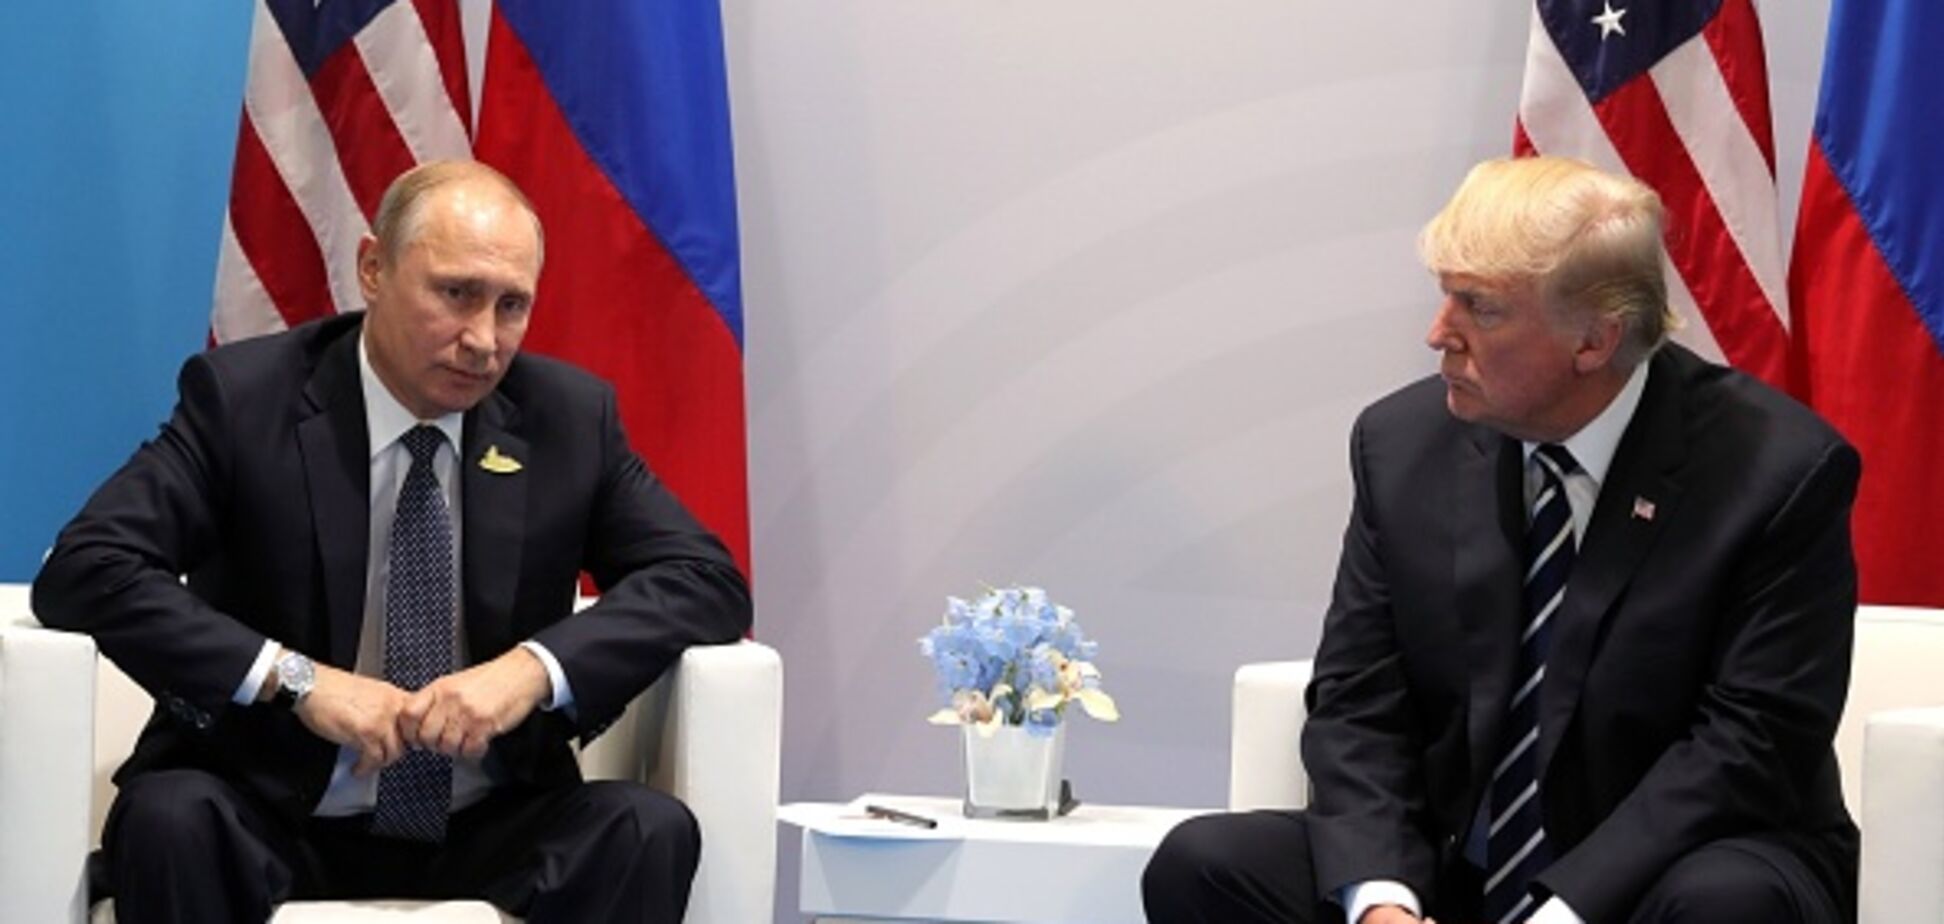 Вашингтон додавит: в отмене встречи Трампа с Путиным увидели 'сигнал' по Донбассу